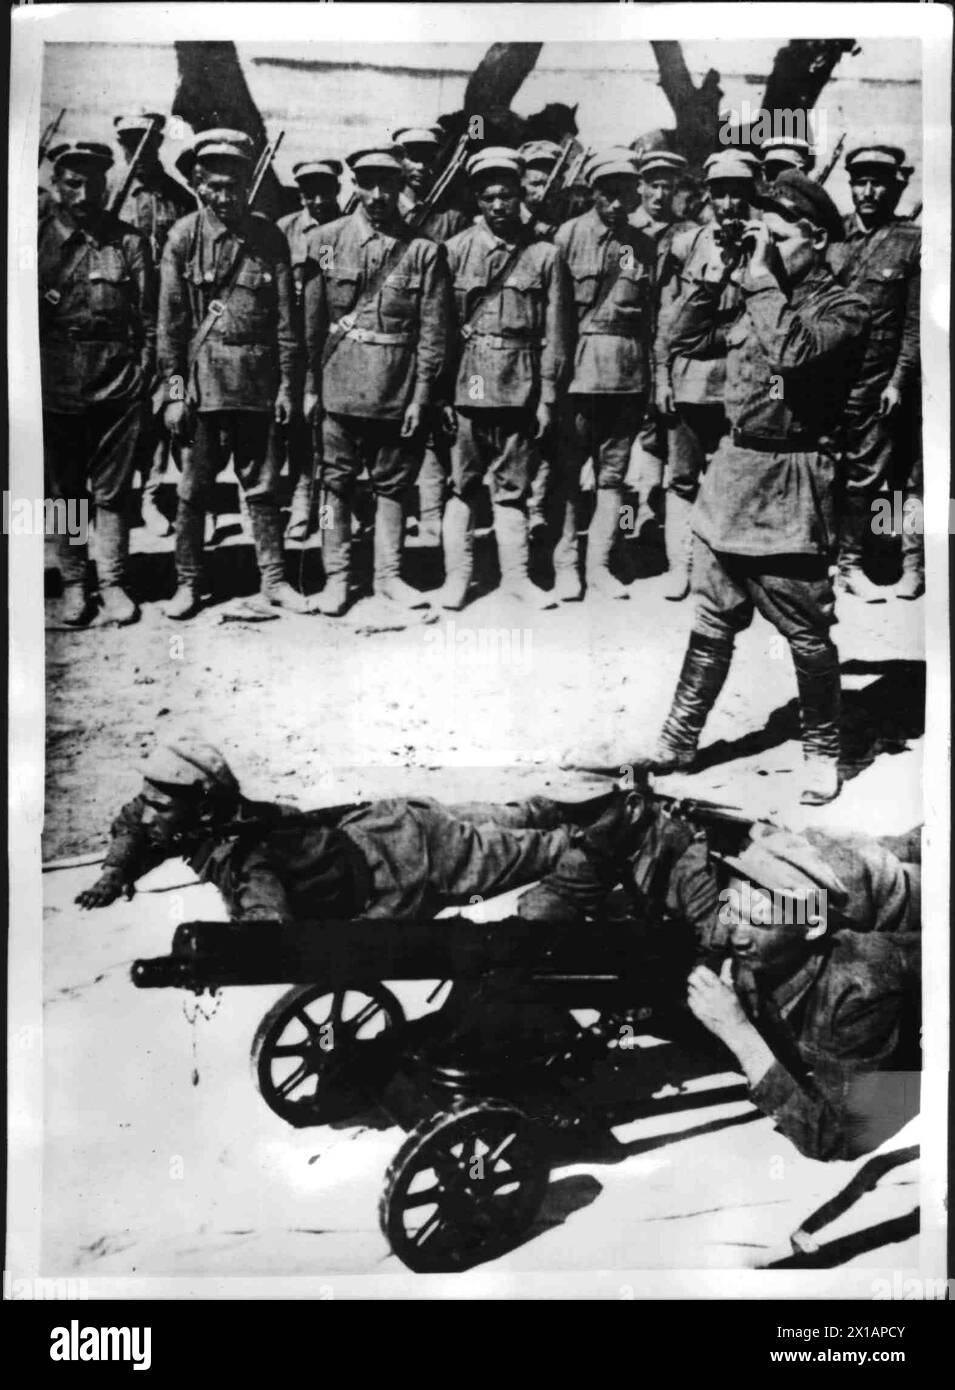 Service militaire, hommes d'un groupe ethnique asiatique intérieur lors d'un exercice sur le terrain, 1930 - 19300101_PD8422 - Rechteinfo : droits gérés (RM) Banque D'Images